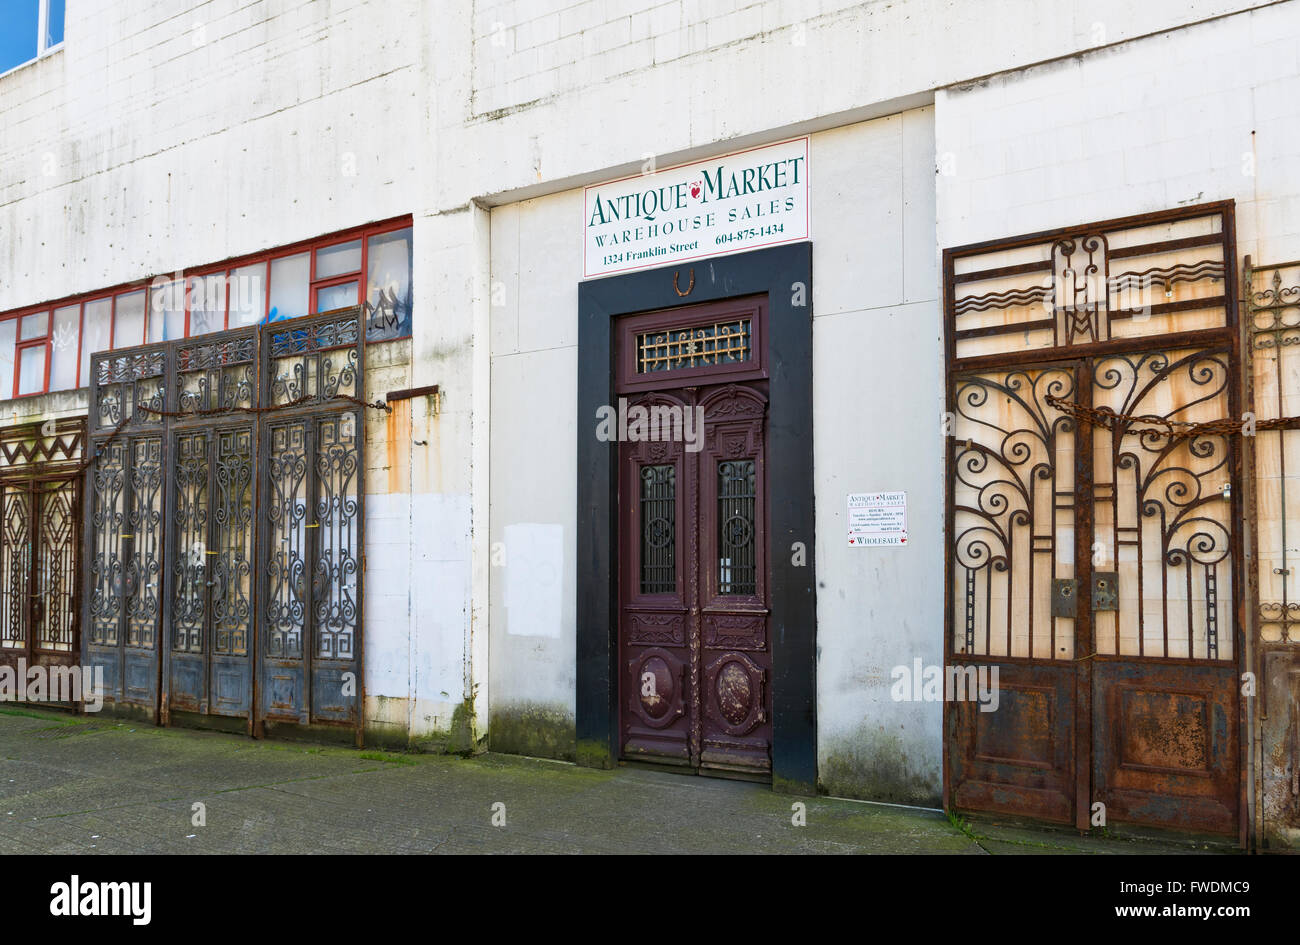 Entrée de marché des antiquaires sur Franklin Street à l'Est de Vancouver. Portes en fer métal ouvragé grilles. Extérieur du bâtiment Banque D'Images